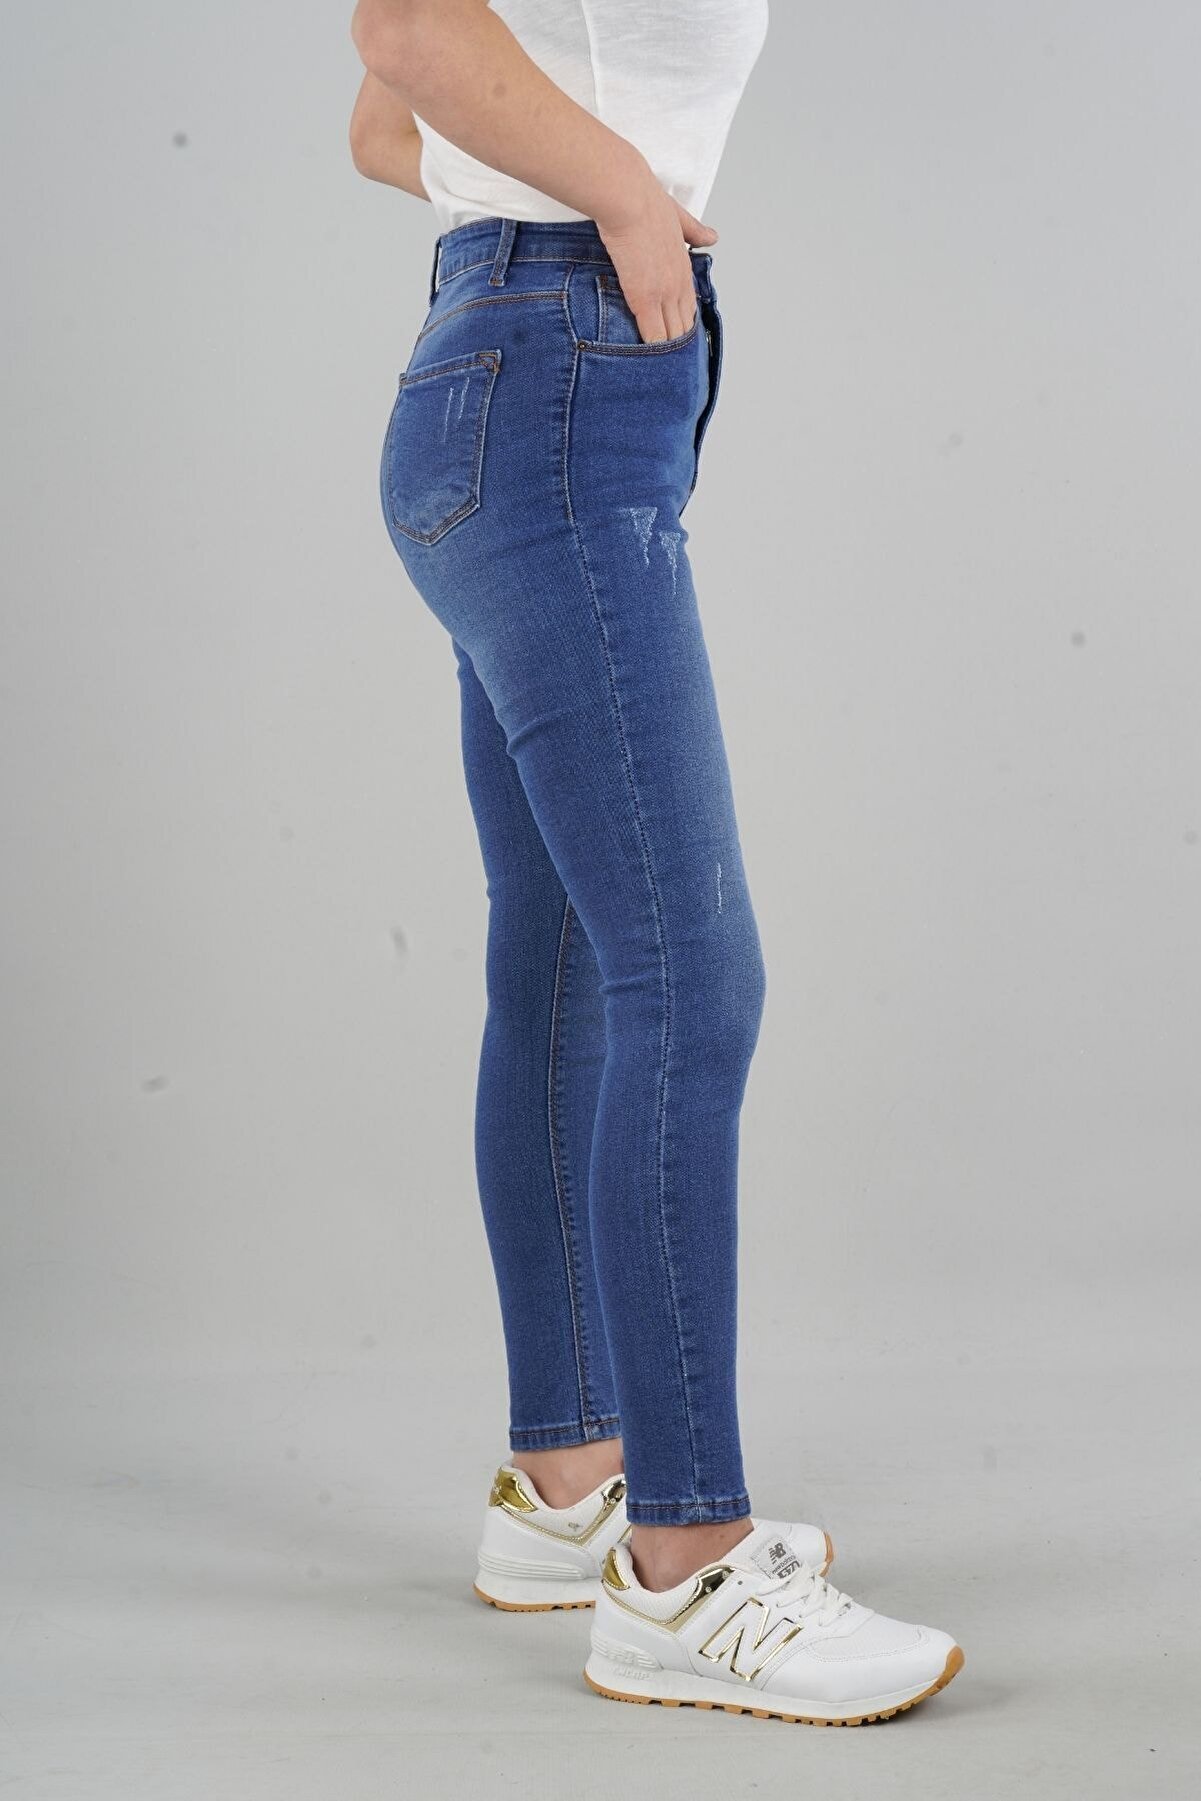 FİHA Herdem 4345 Kadın Mavi Tırnaklı Taşlamalı Yüksek Bel Skinny Jeans